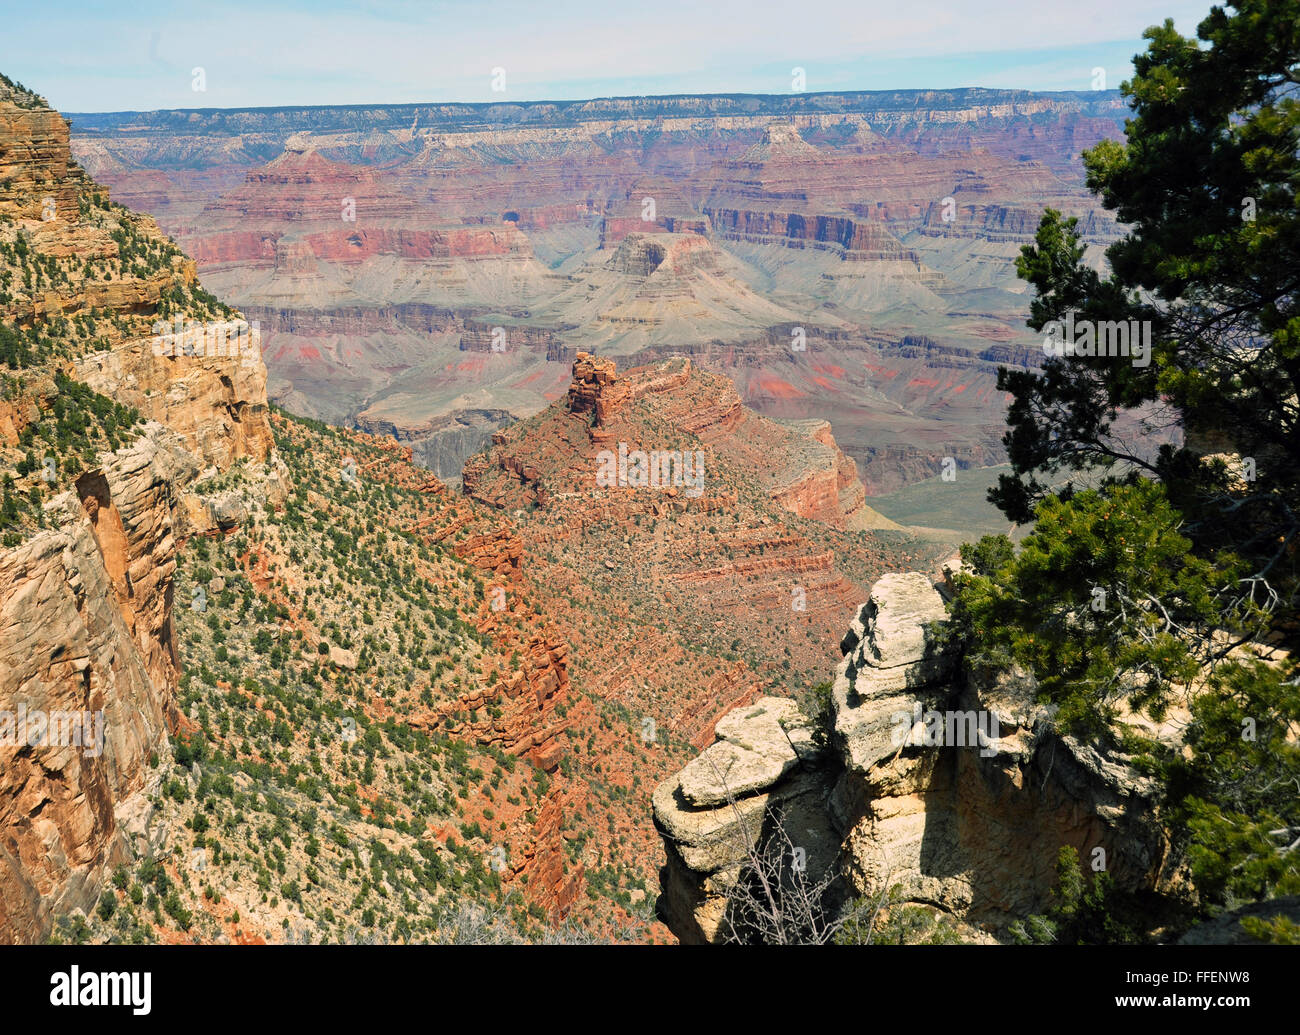 Grand Canyon est un canyon aux flancs abrupts sculptés par le fleuve Colorado Arizona. Les Américains indigènes indiens se sont installés dans la région de canyon. Banque D'Images